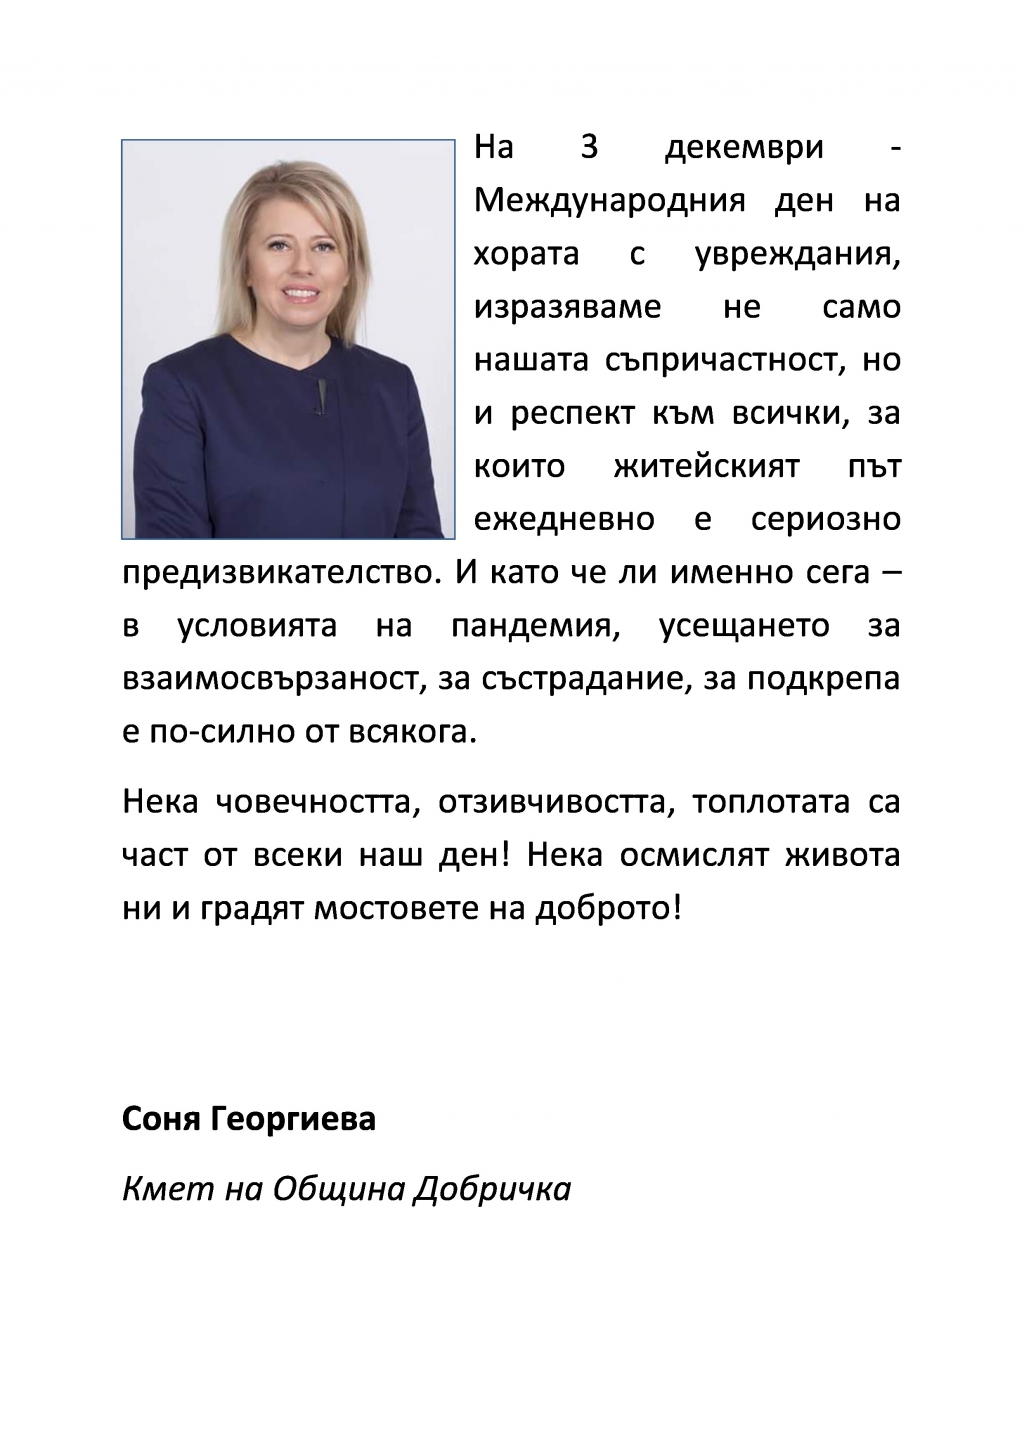 Кметът Соня Георгиева: Нека човечността, отзивчивостта, топлотата са част от всеки наш ден!